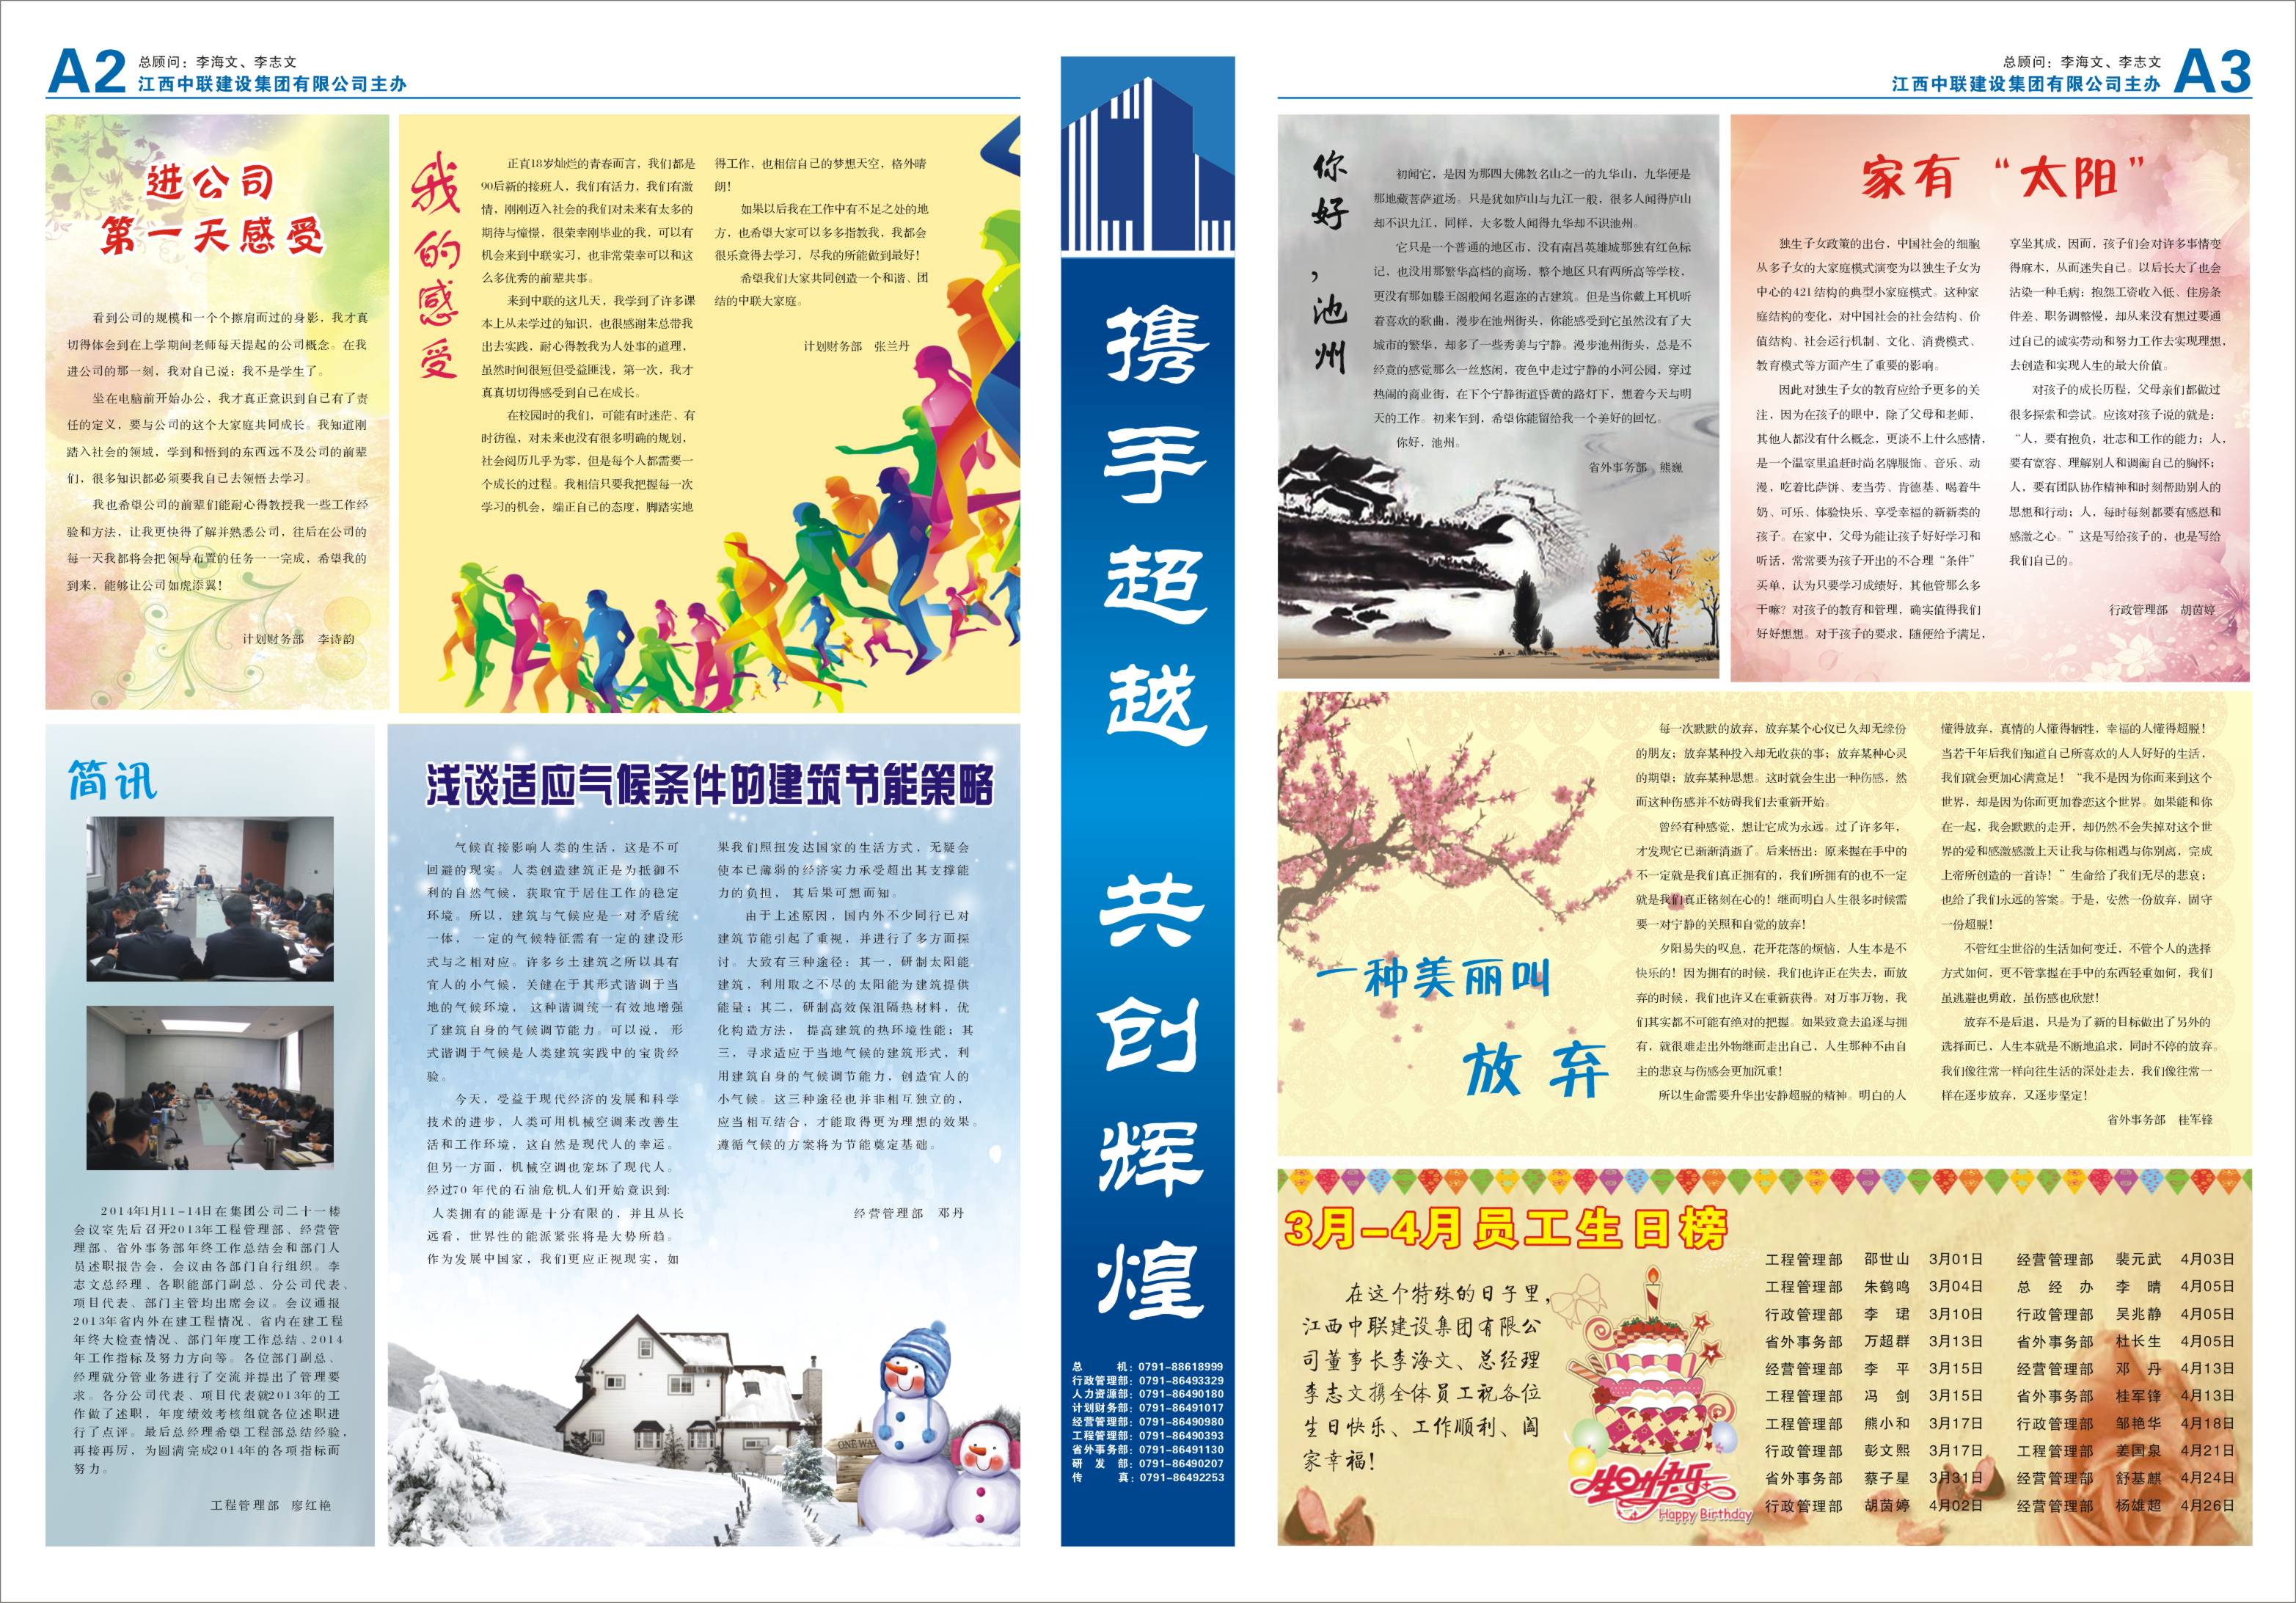 2中联报纸28期2-3.jpg